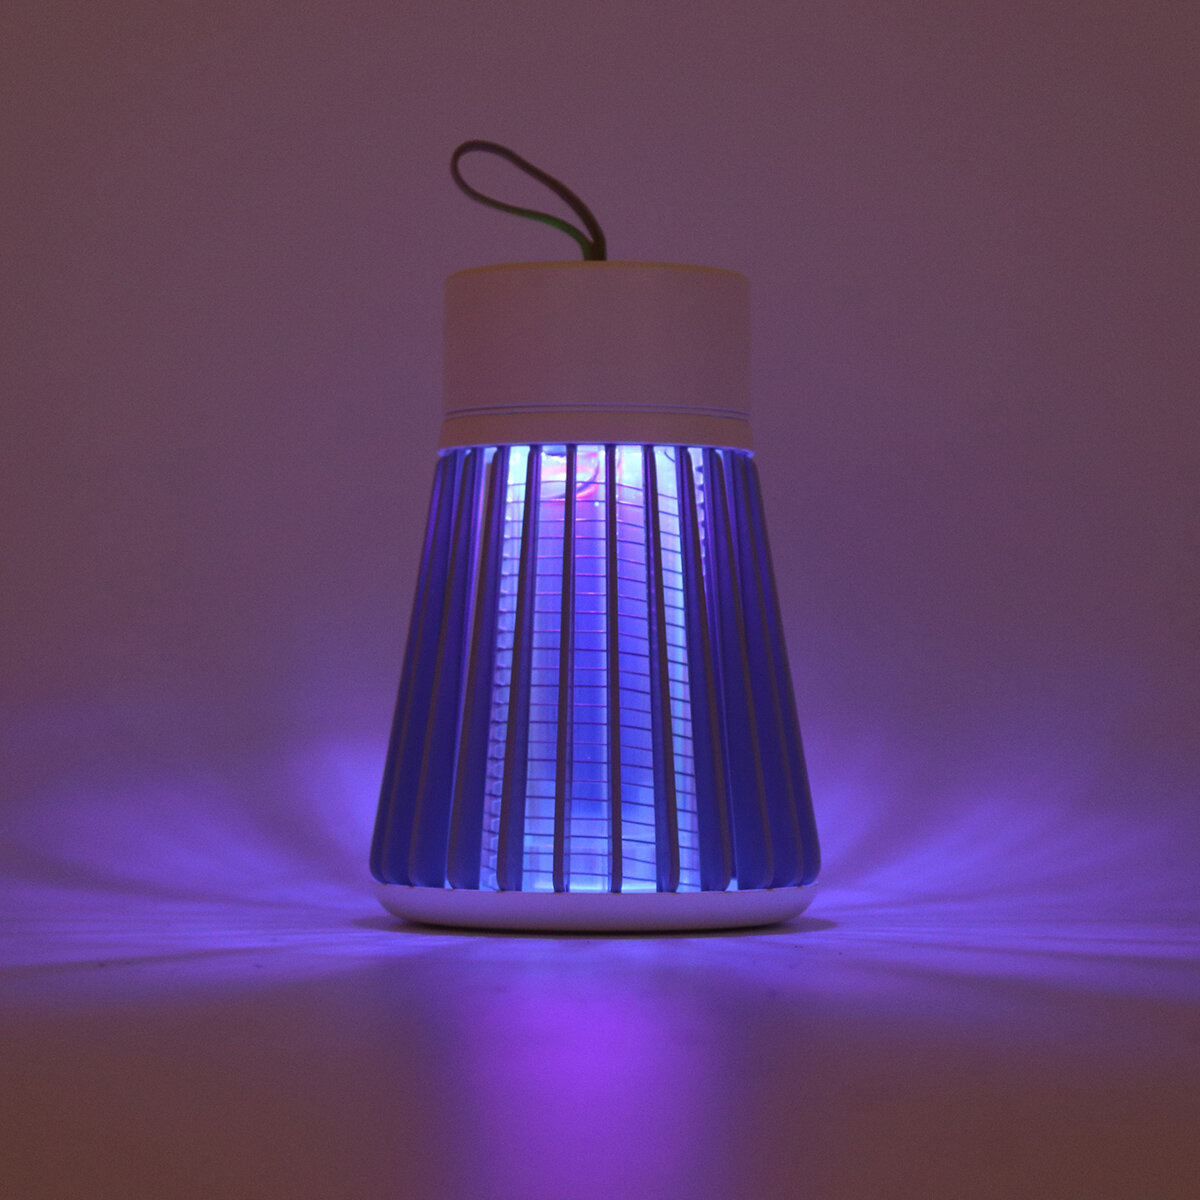 Nabíjecí lampa na hubení hmyzu s nízkou hlučností, fyzická odpuzovač komárů.